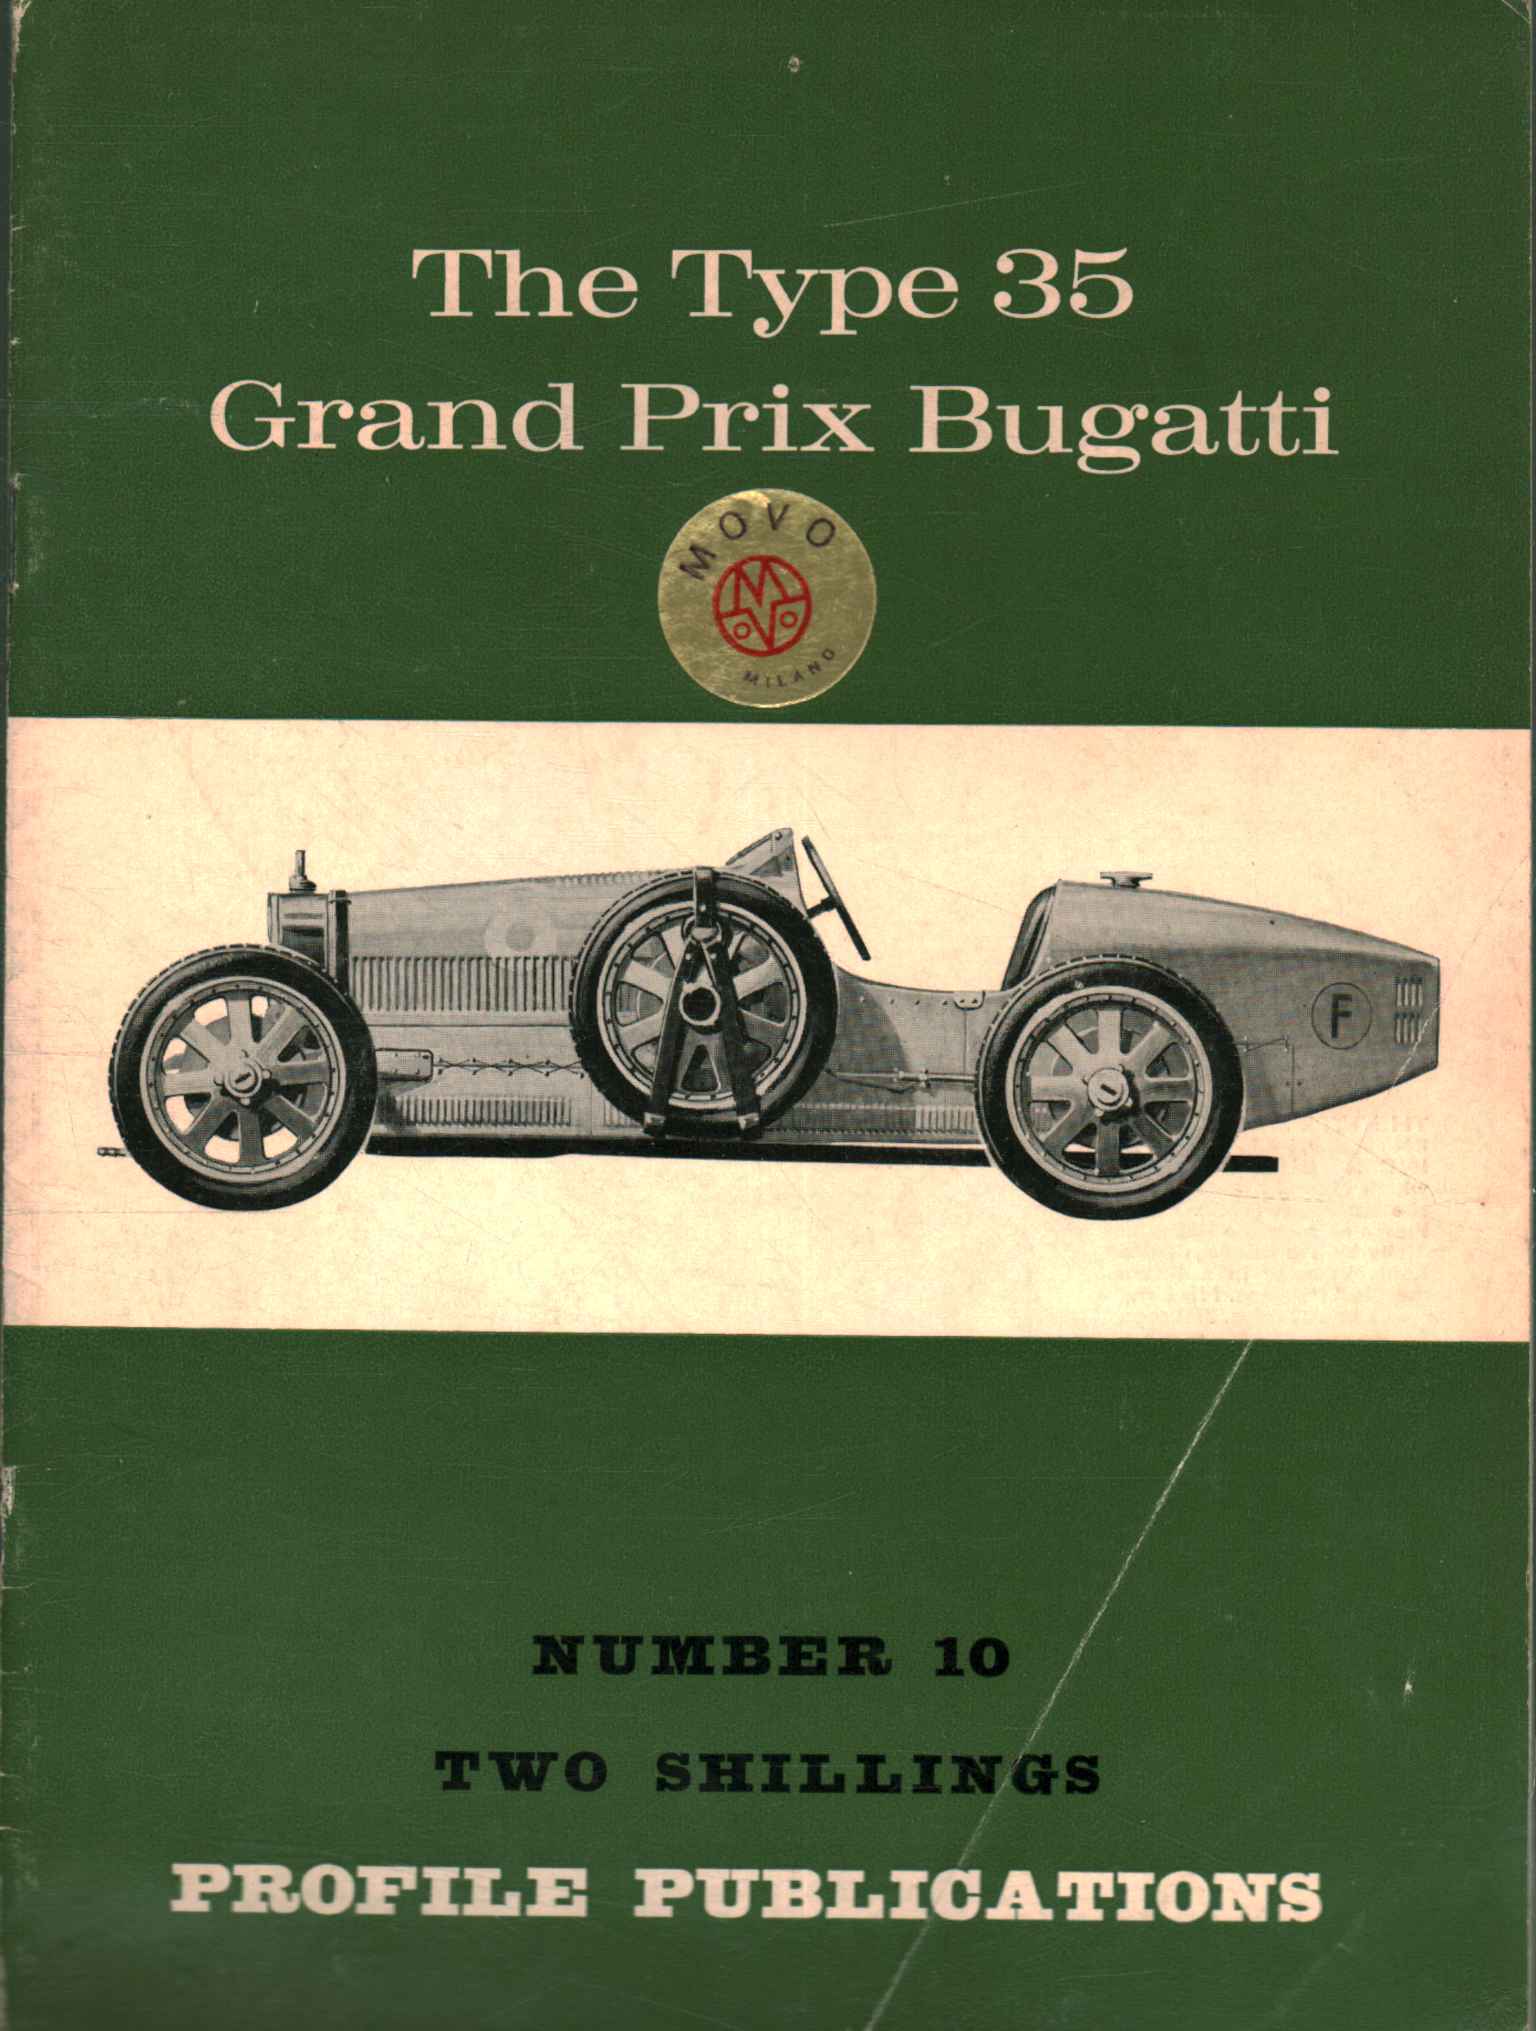 El Bugatti Gran Premio Tipo 35